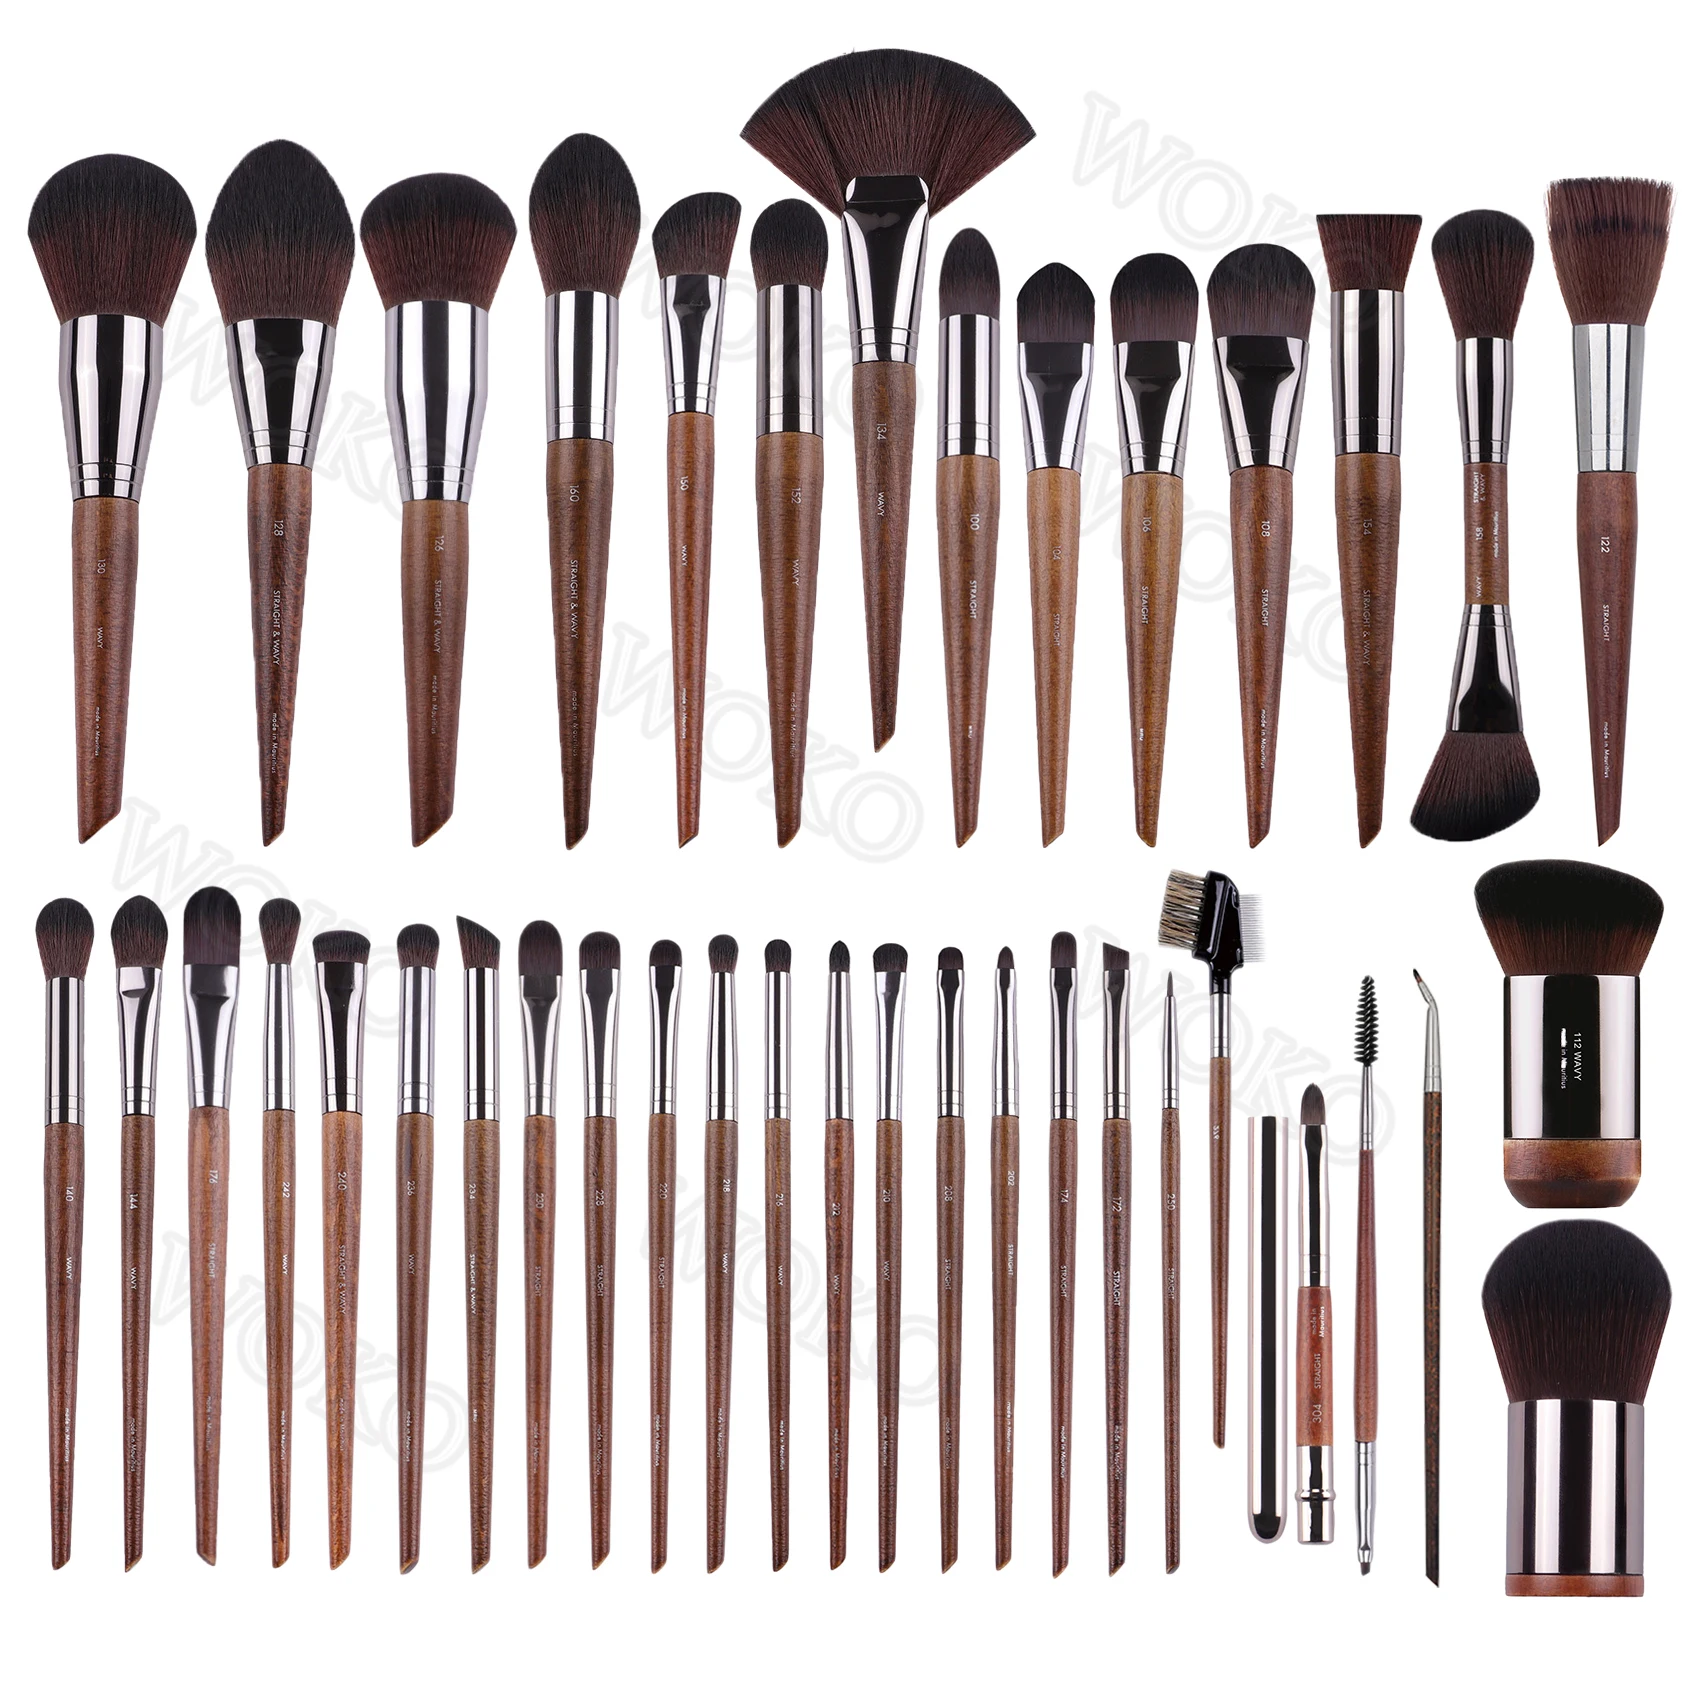 

MUF series Makeup Brushes Set Loose Powder Blush Contour Foundation Bronzer Kabuki Eyeshadow Crease Smudge Liner Brow Brush Tool